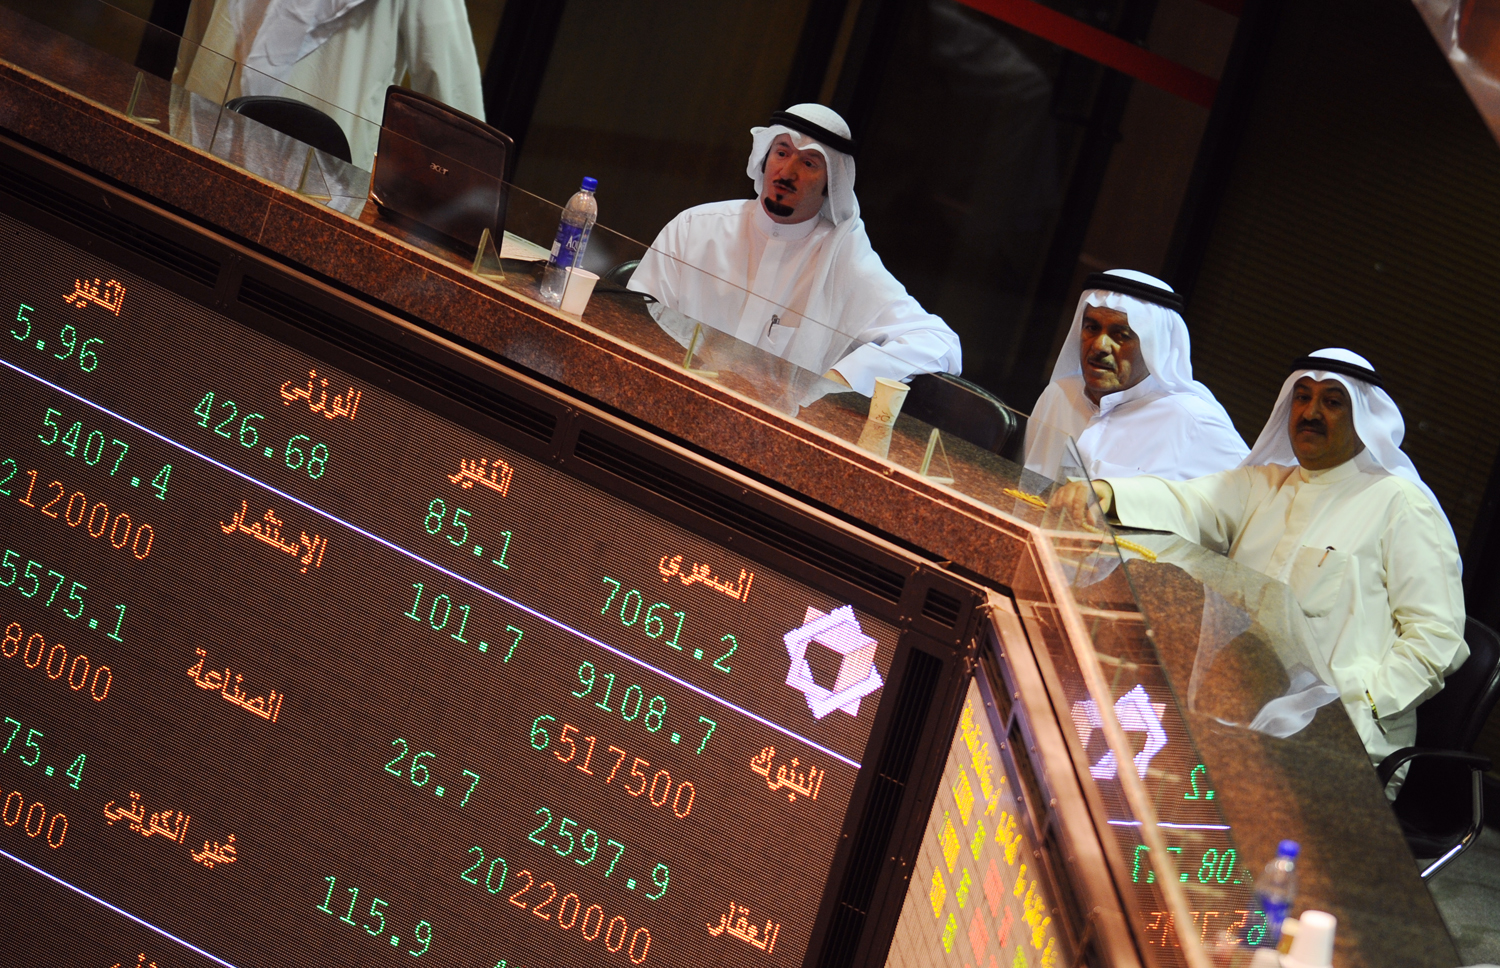 Kuwait Stock Exchange (KSE)